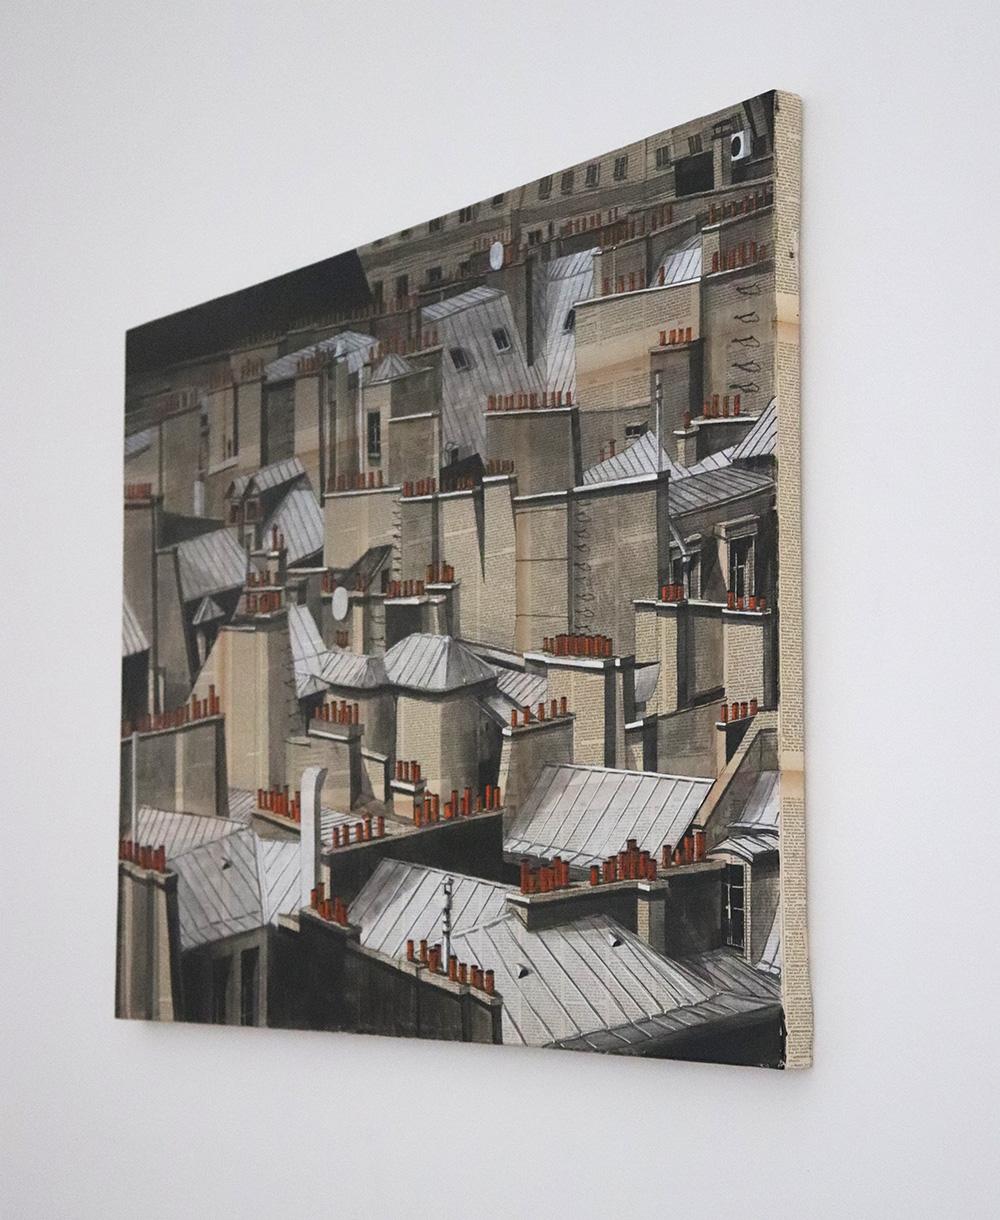 Rooftops II de Guillaume Chansarel - Peinture de paysage urbain, Paris, ville - Contemporain Painting par Guillaume Chansarel (Guiyome)